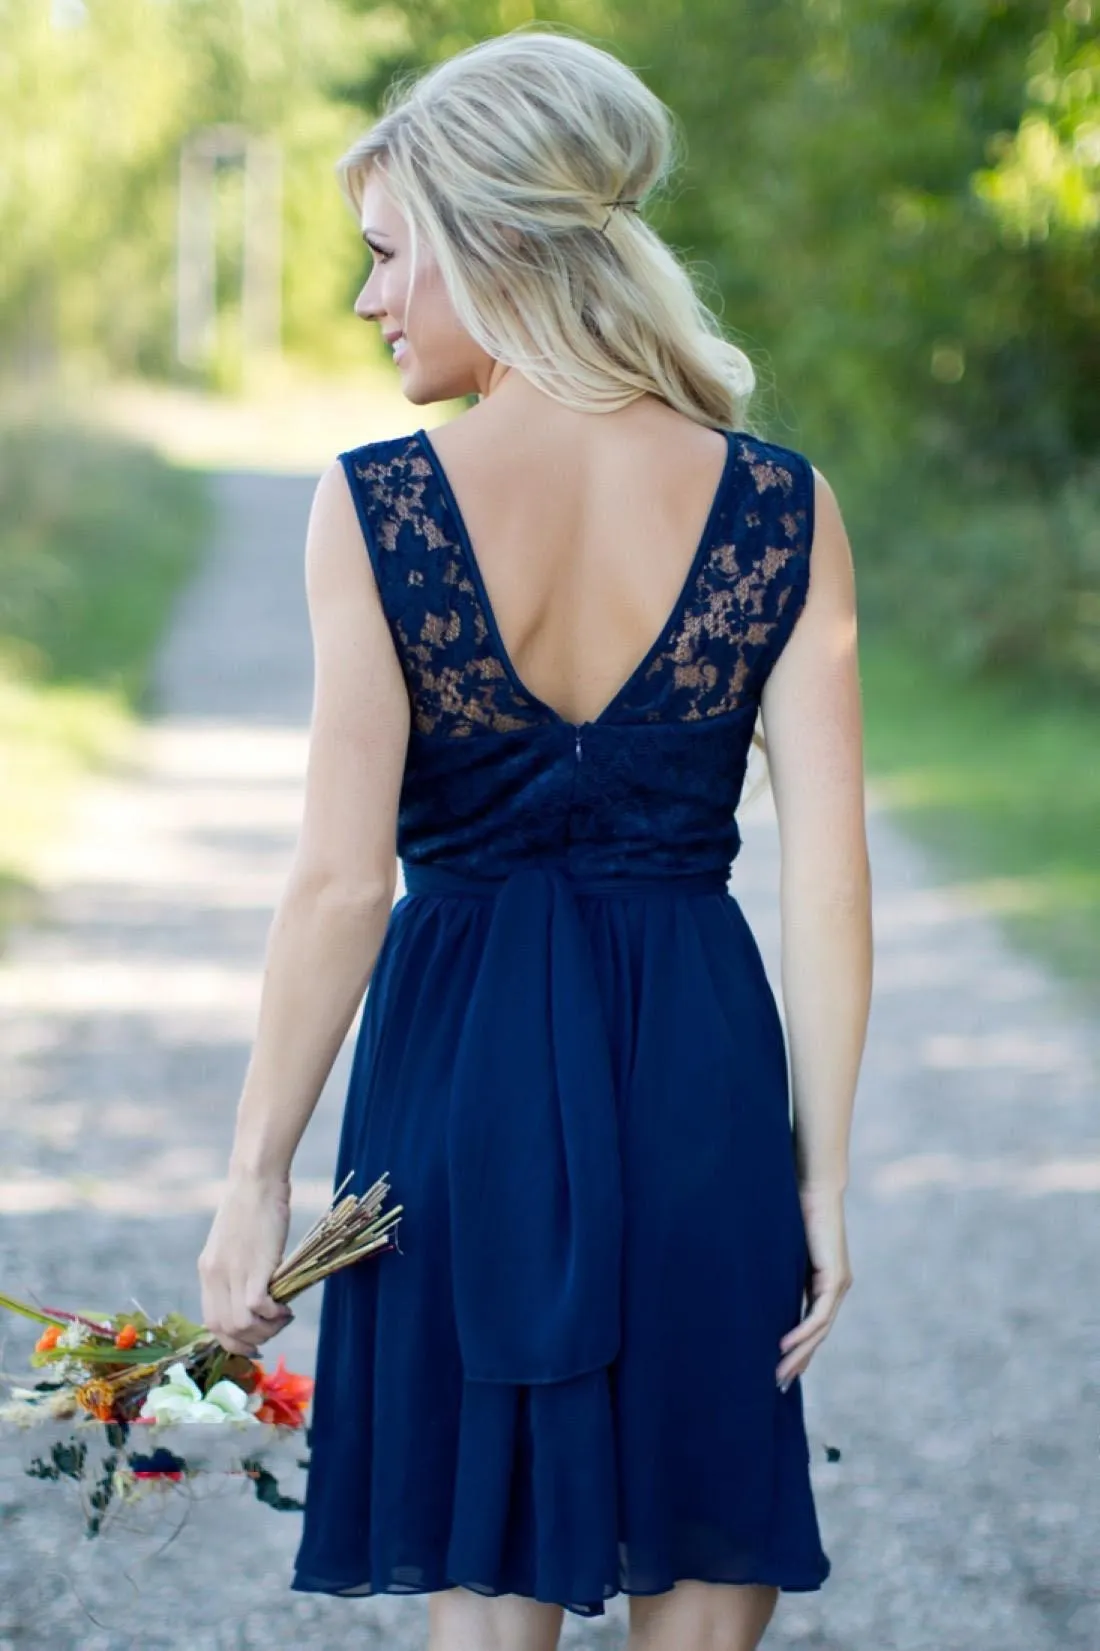 Landstijl Royal Blue Chiffon Lace Short Bruidsmeisje jurken voor bruiloften goedkoop juweel backless knie lengte casual jurken346s